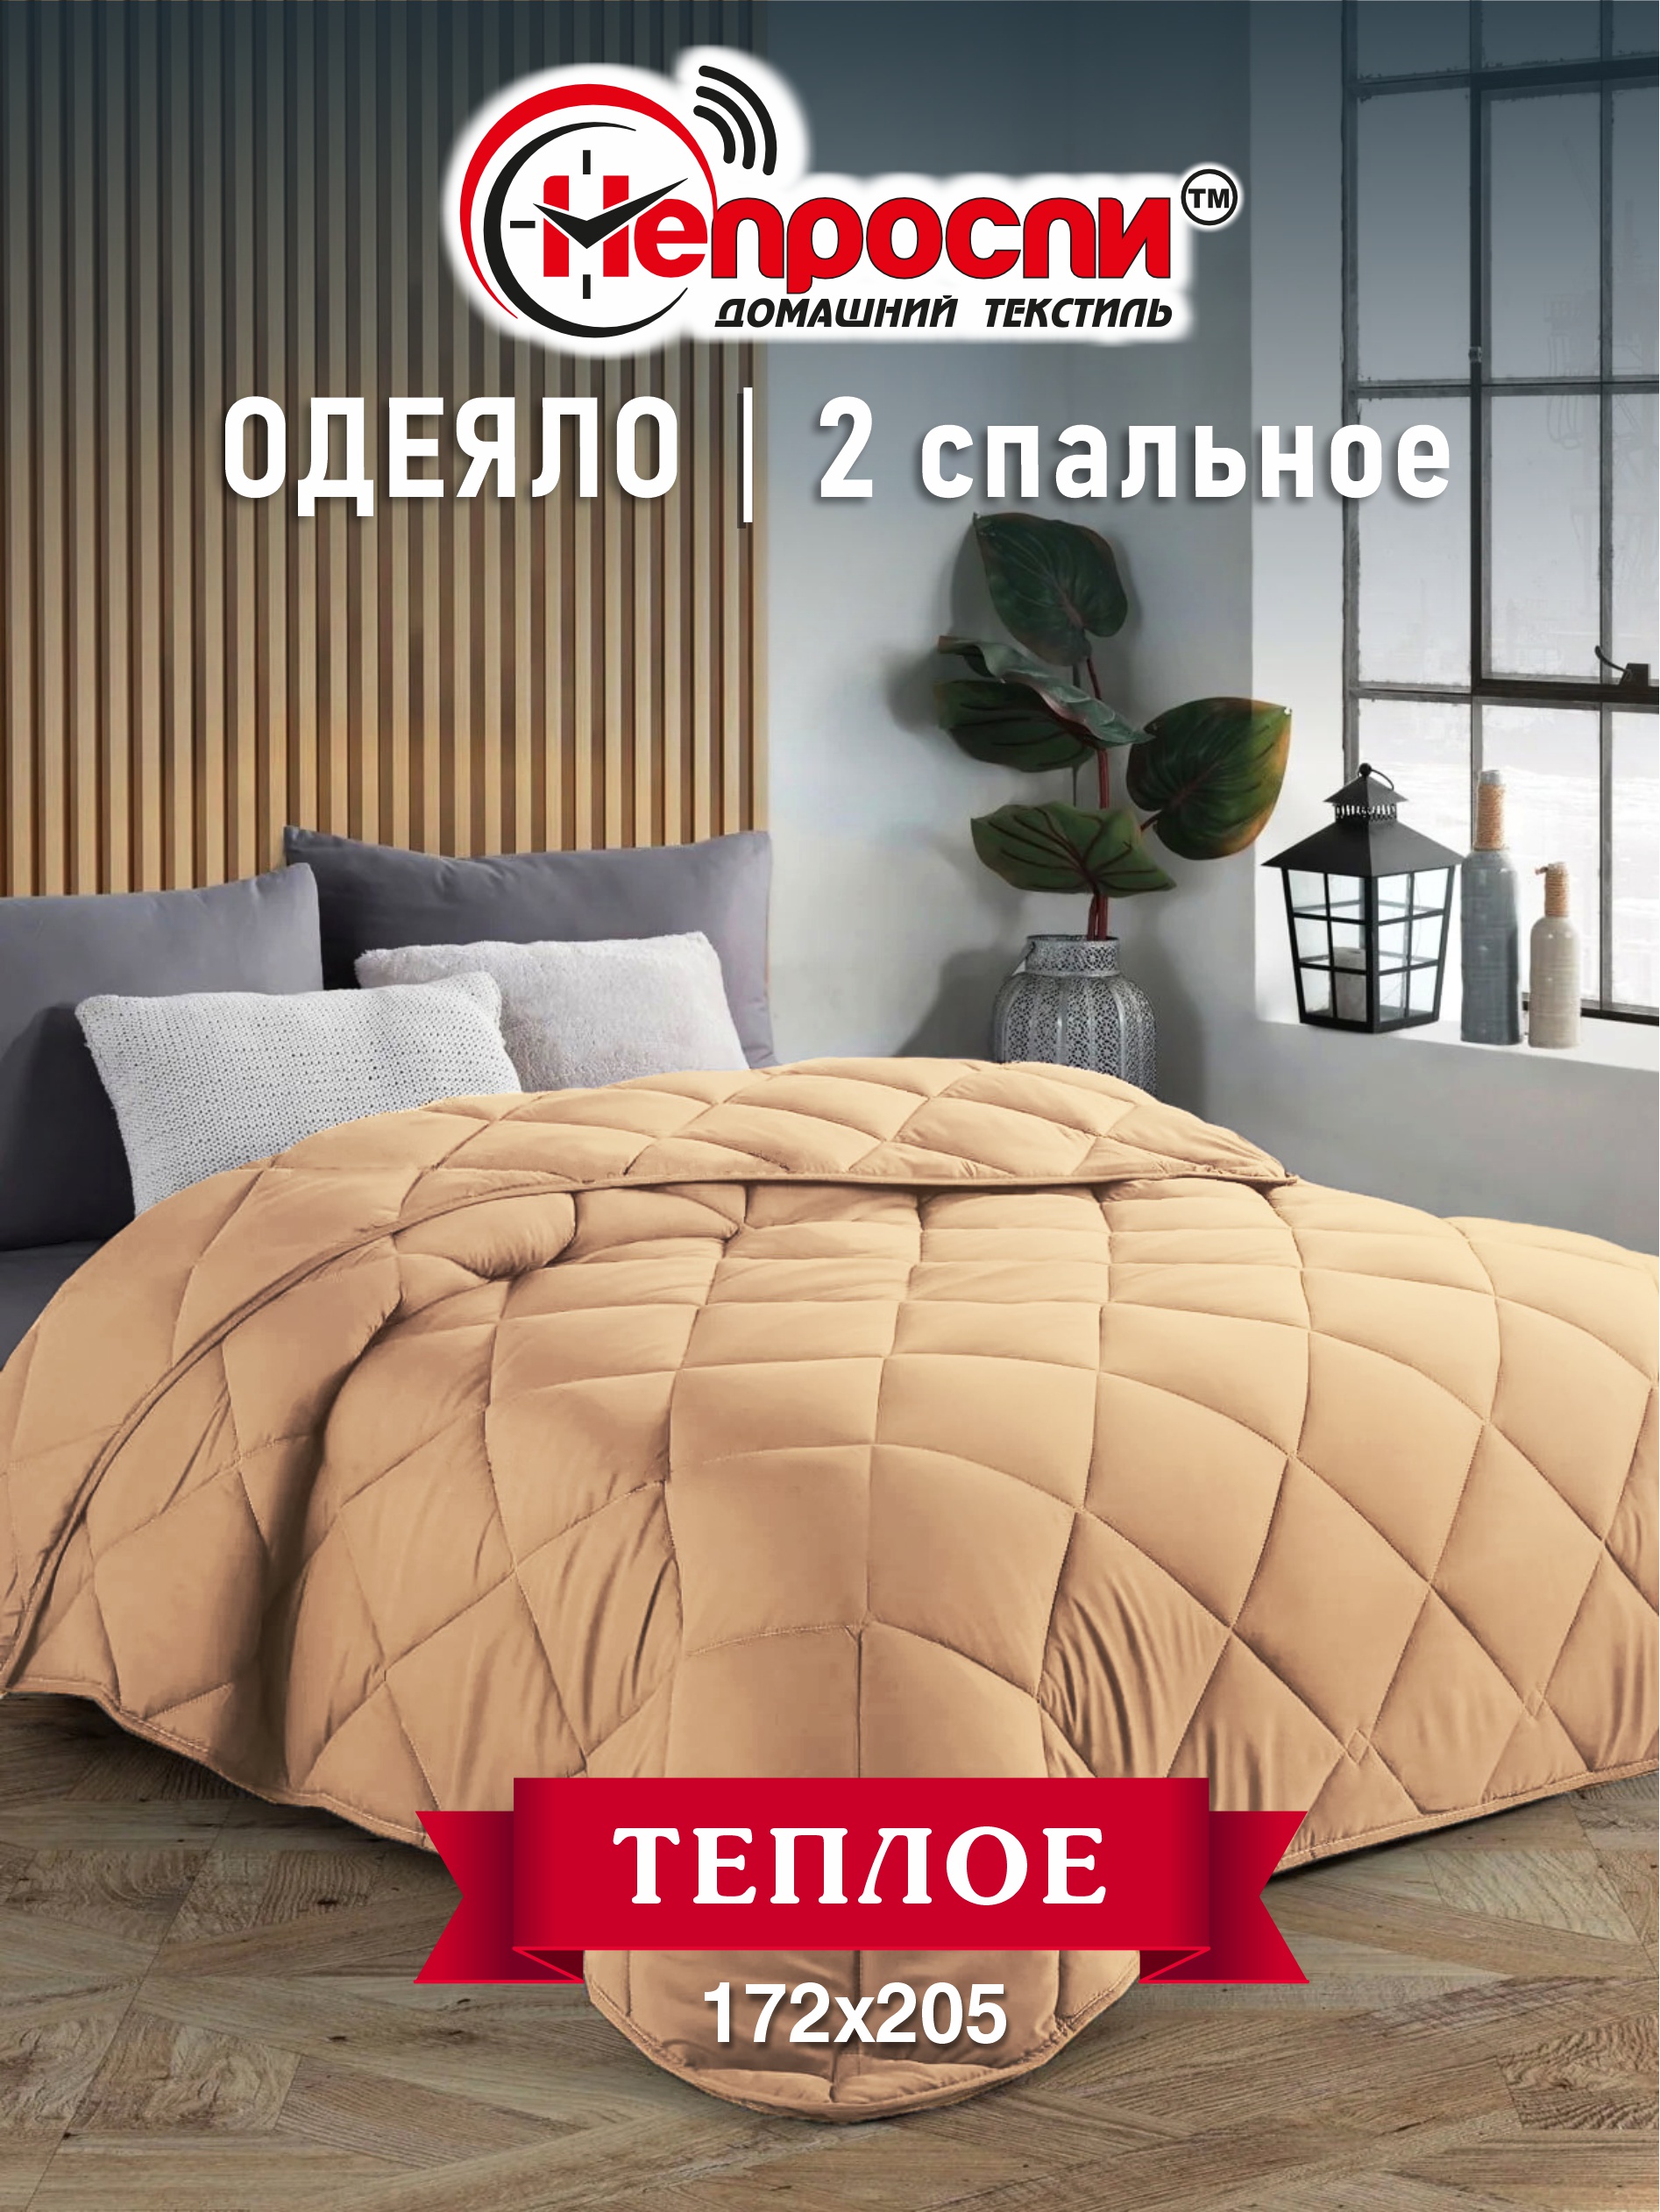 Одеяло Непроспи Верблюд 2-х спальное, 172х205 см